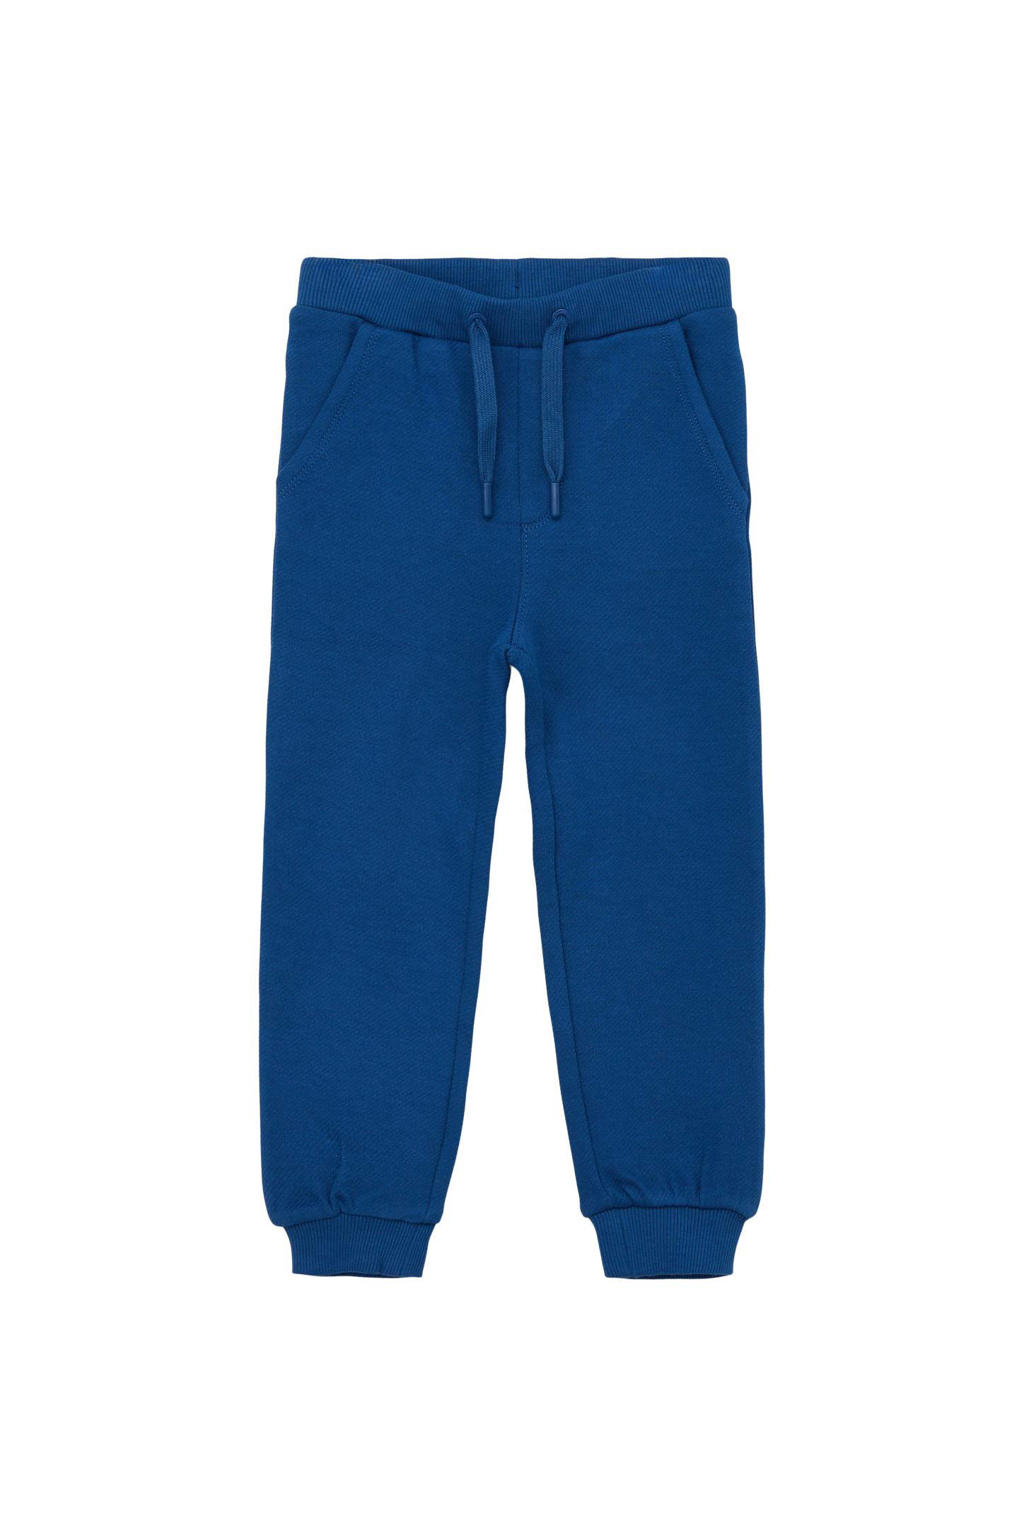 Blauwe jongens s.Oliver joggingbroek van sweat materiaal met regular waist en elastische tailleband met koord